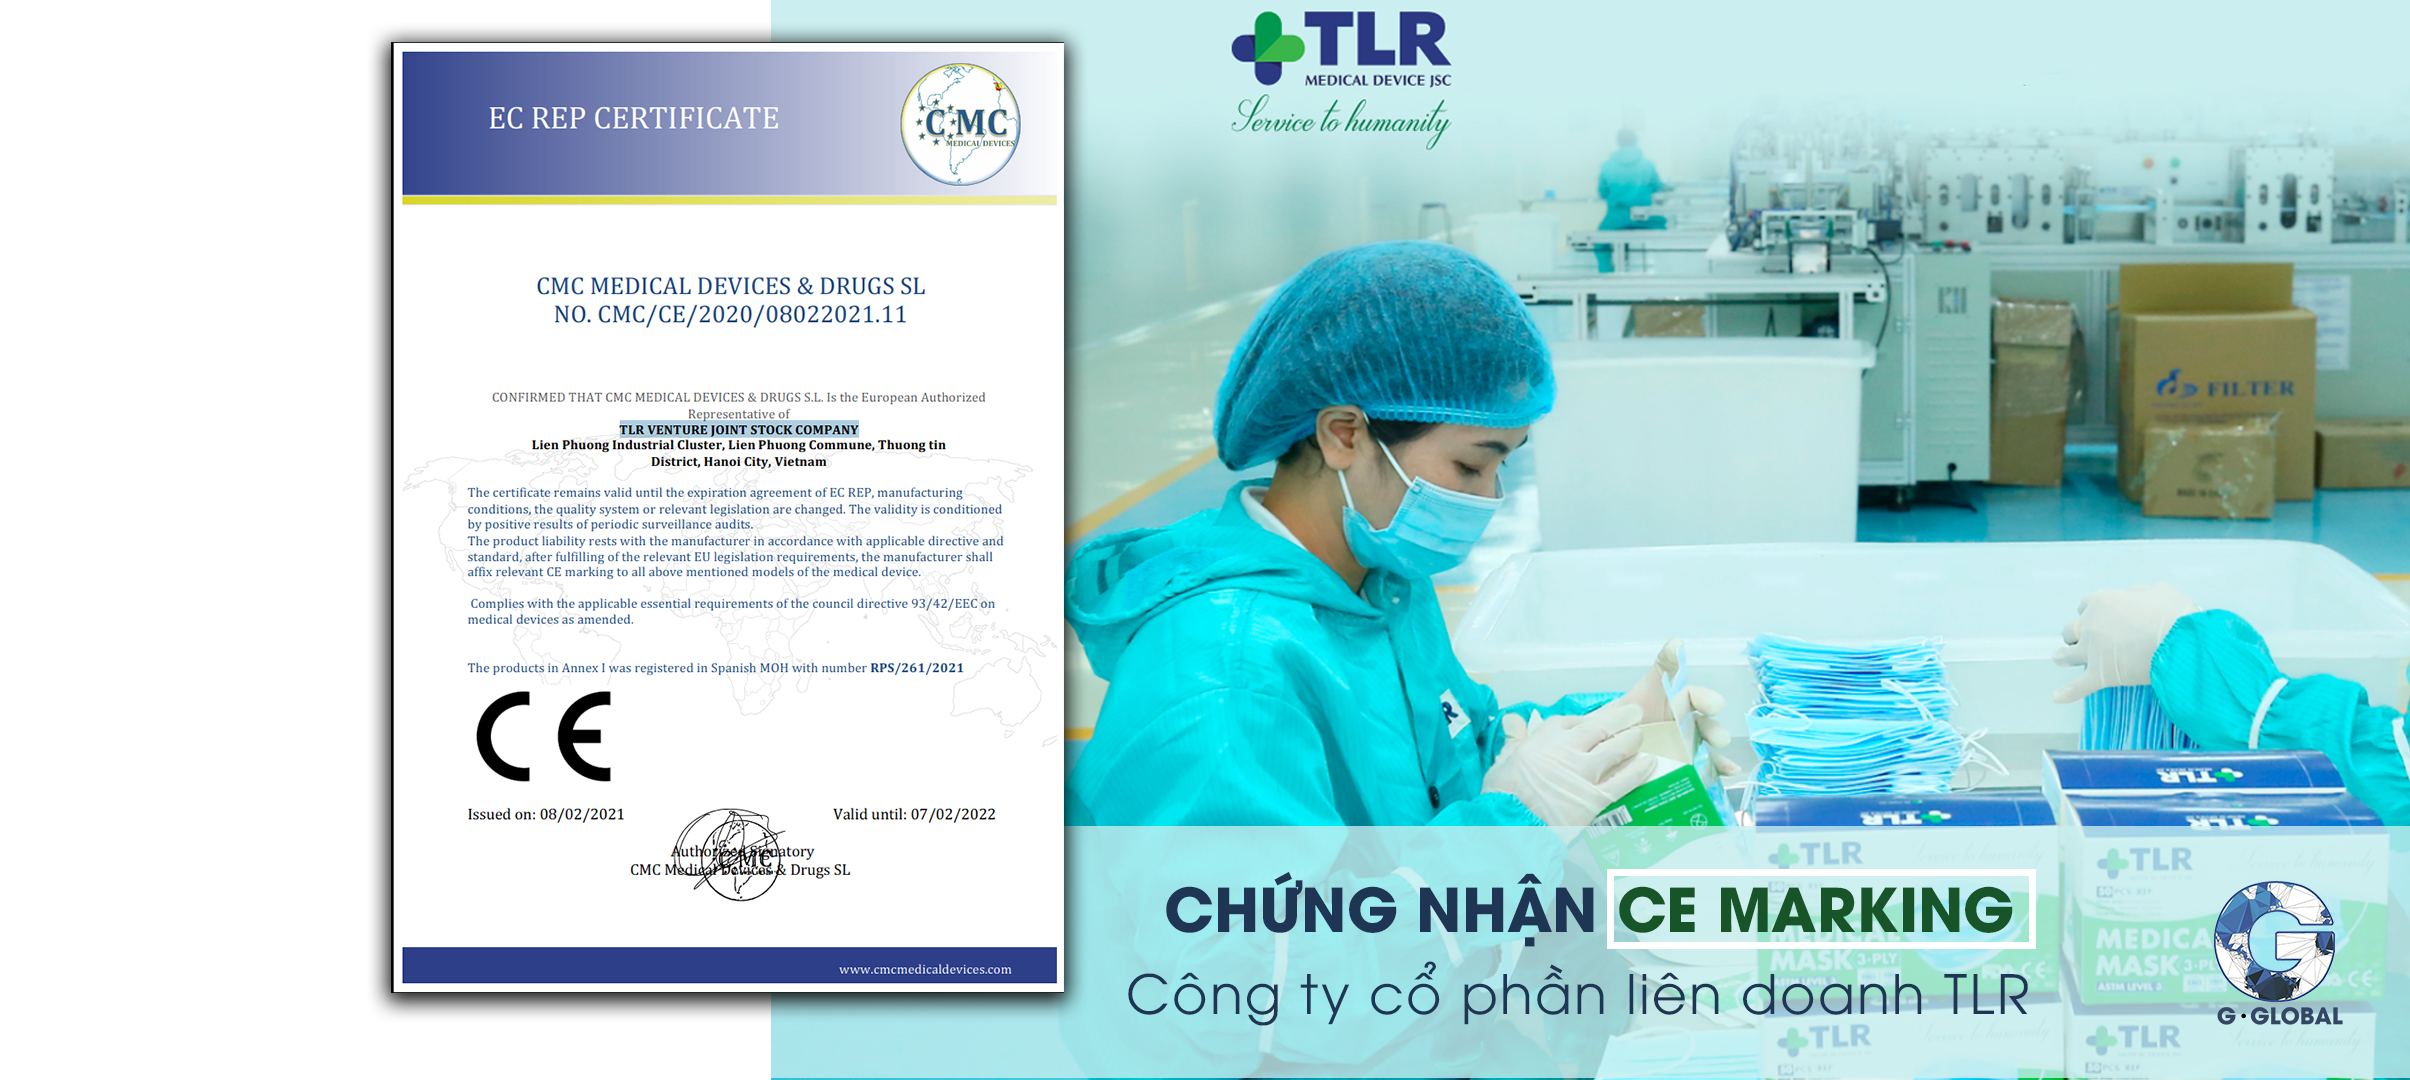 Công ty Cổ phần Liên doanh TLR – một trong những đơn vị sản xuất thiết bị y tế với bề dày kinh nghiệm sản xuất và năng lực chuyên môn